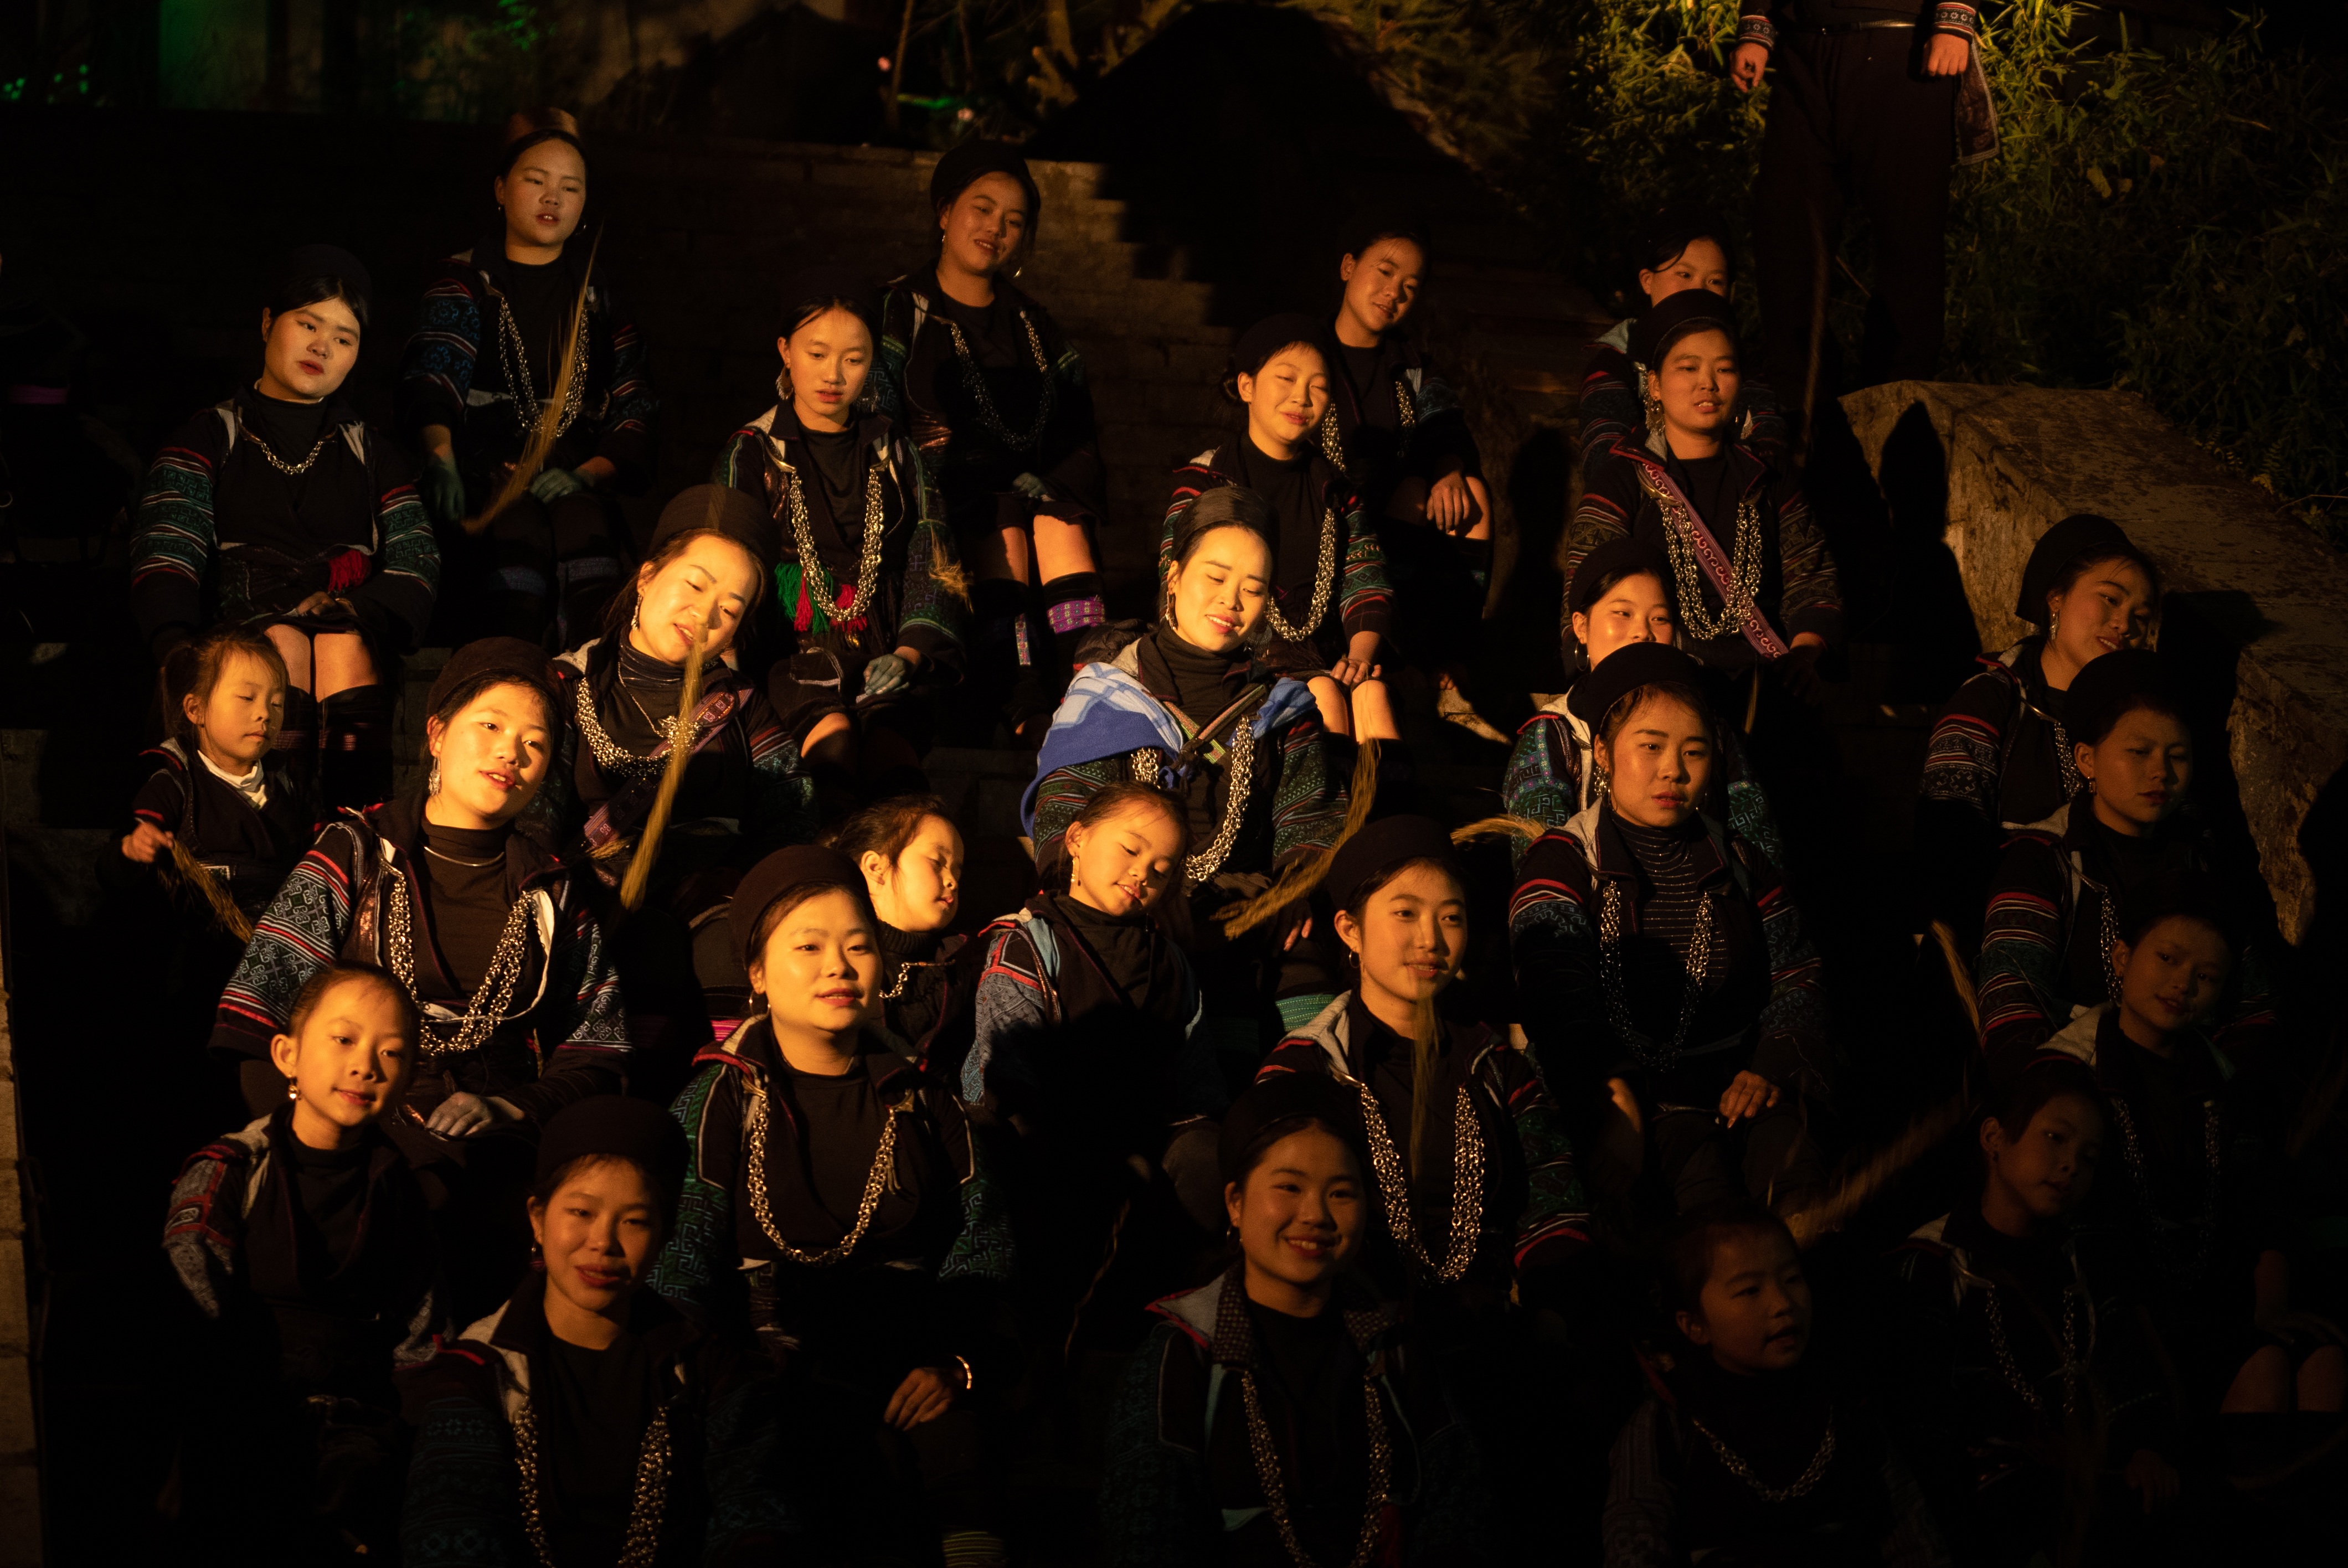 Nét đẹp văn hóa người Mông  trong vở thực cảnh The Mong show - 11